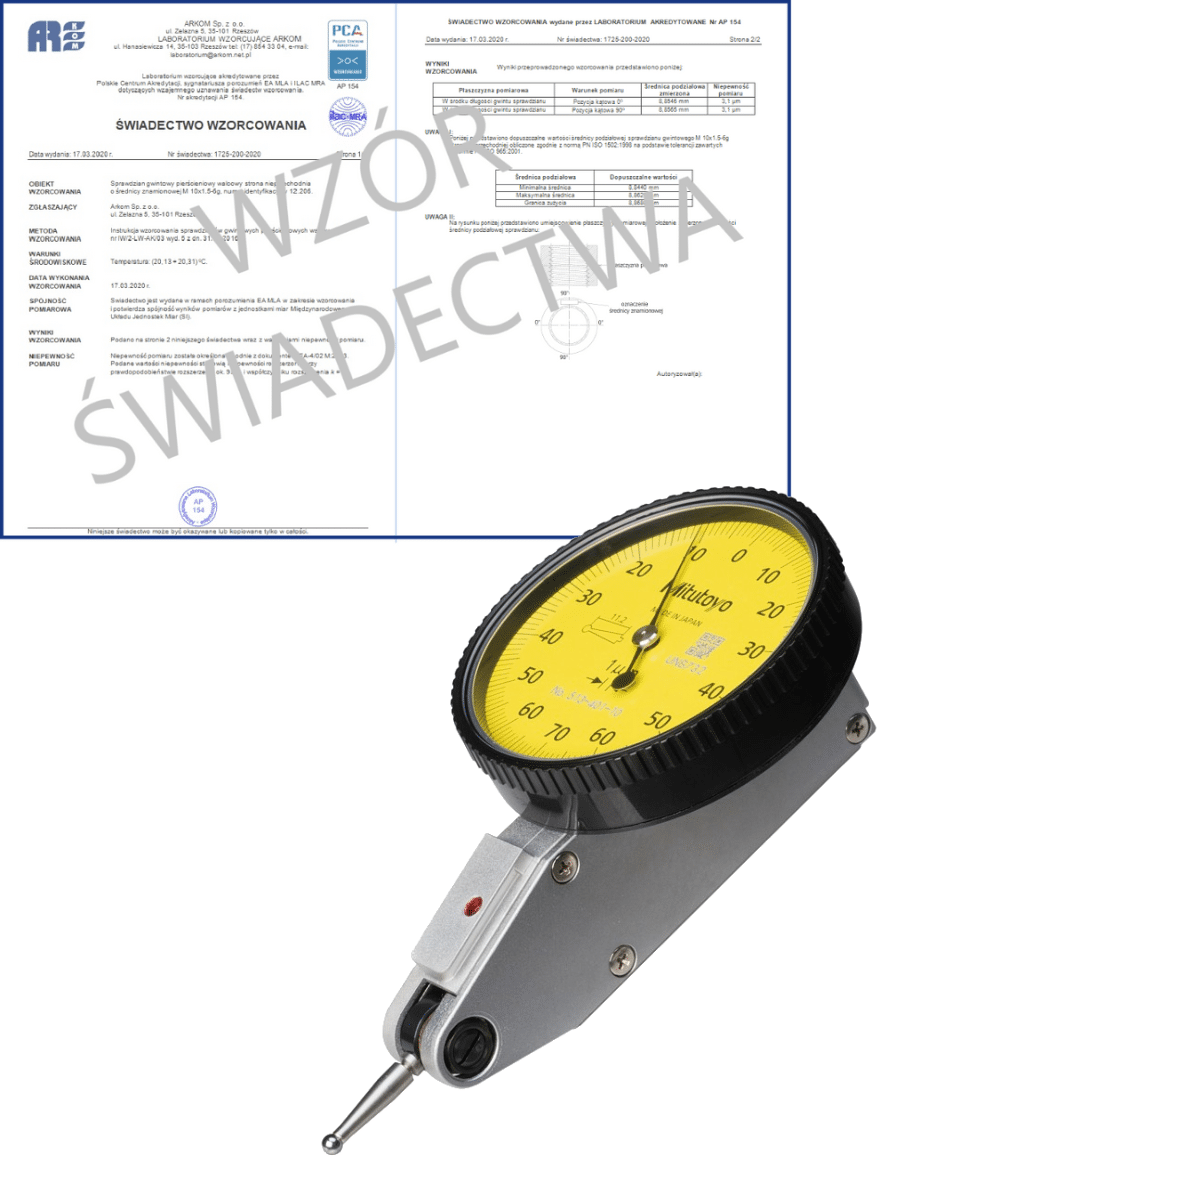 MITUTOYO czujnik dźwigniowo-zębaty 0-70-0/0,14/0,001 mm + świadectwo wzorcowania PCA 513-401-10E WZORC